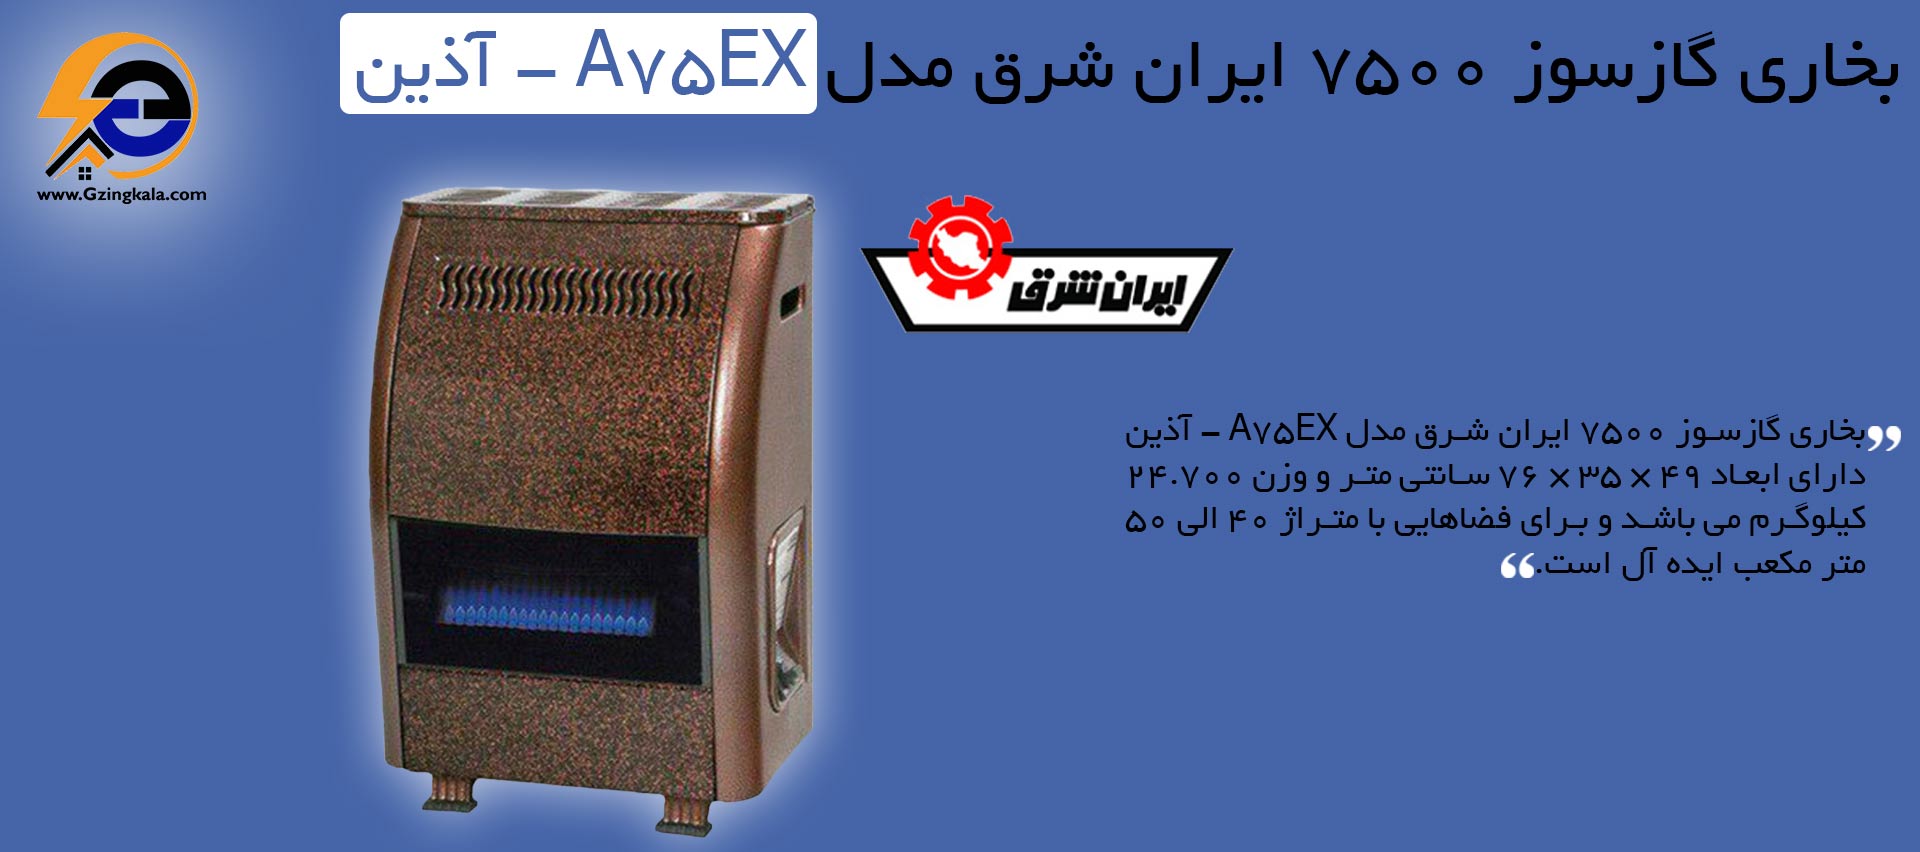 بخاری گازسوز 7500 ایران شرق مدل A75EX - آذین